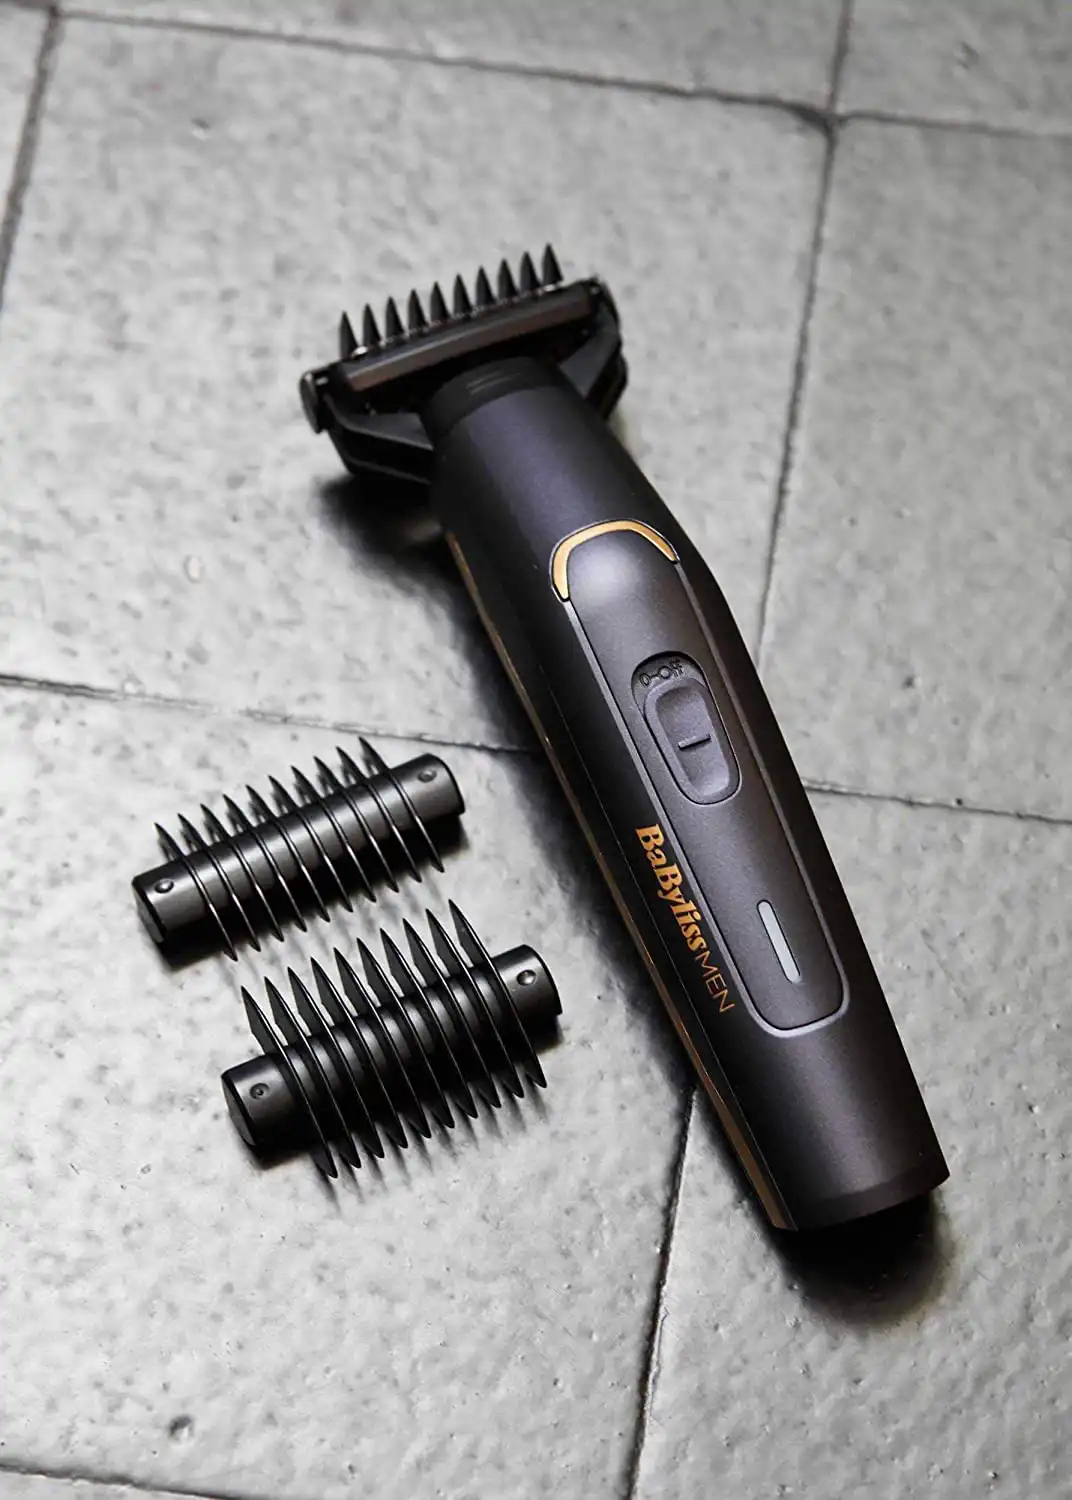 Babyliss Electric Hair Clipper for men, for dry & wet use, Black, BG120E